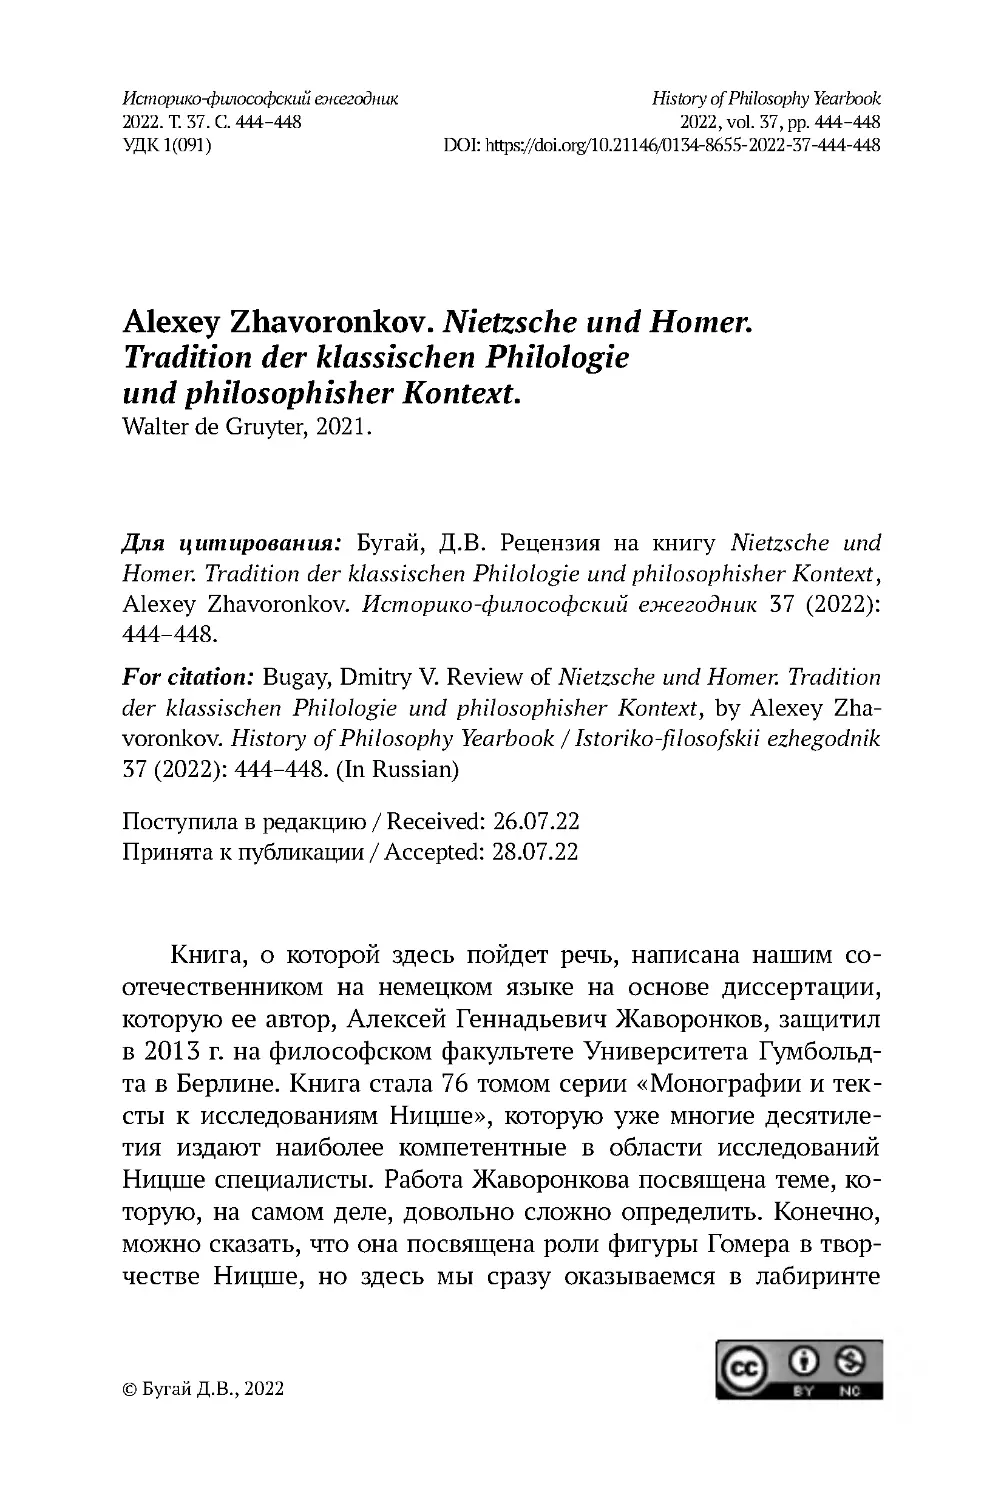 Alexey Zhavoronkov. Nietzsche und Homer. Tradition der klassischen Philologie und philosophisher Kontext. Walter de Gruyter, 2021.